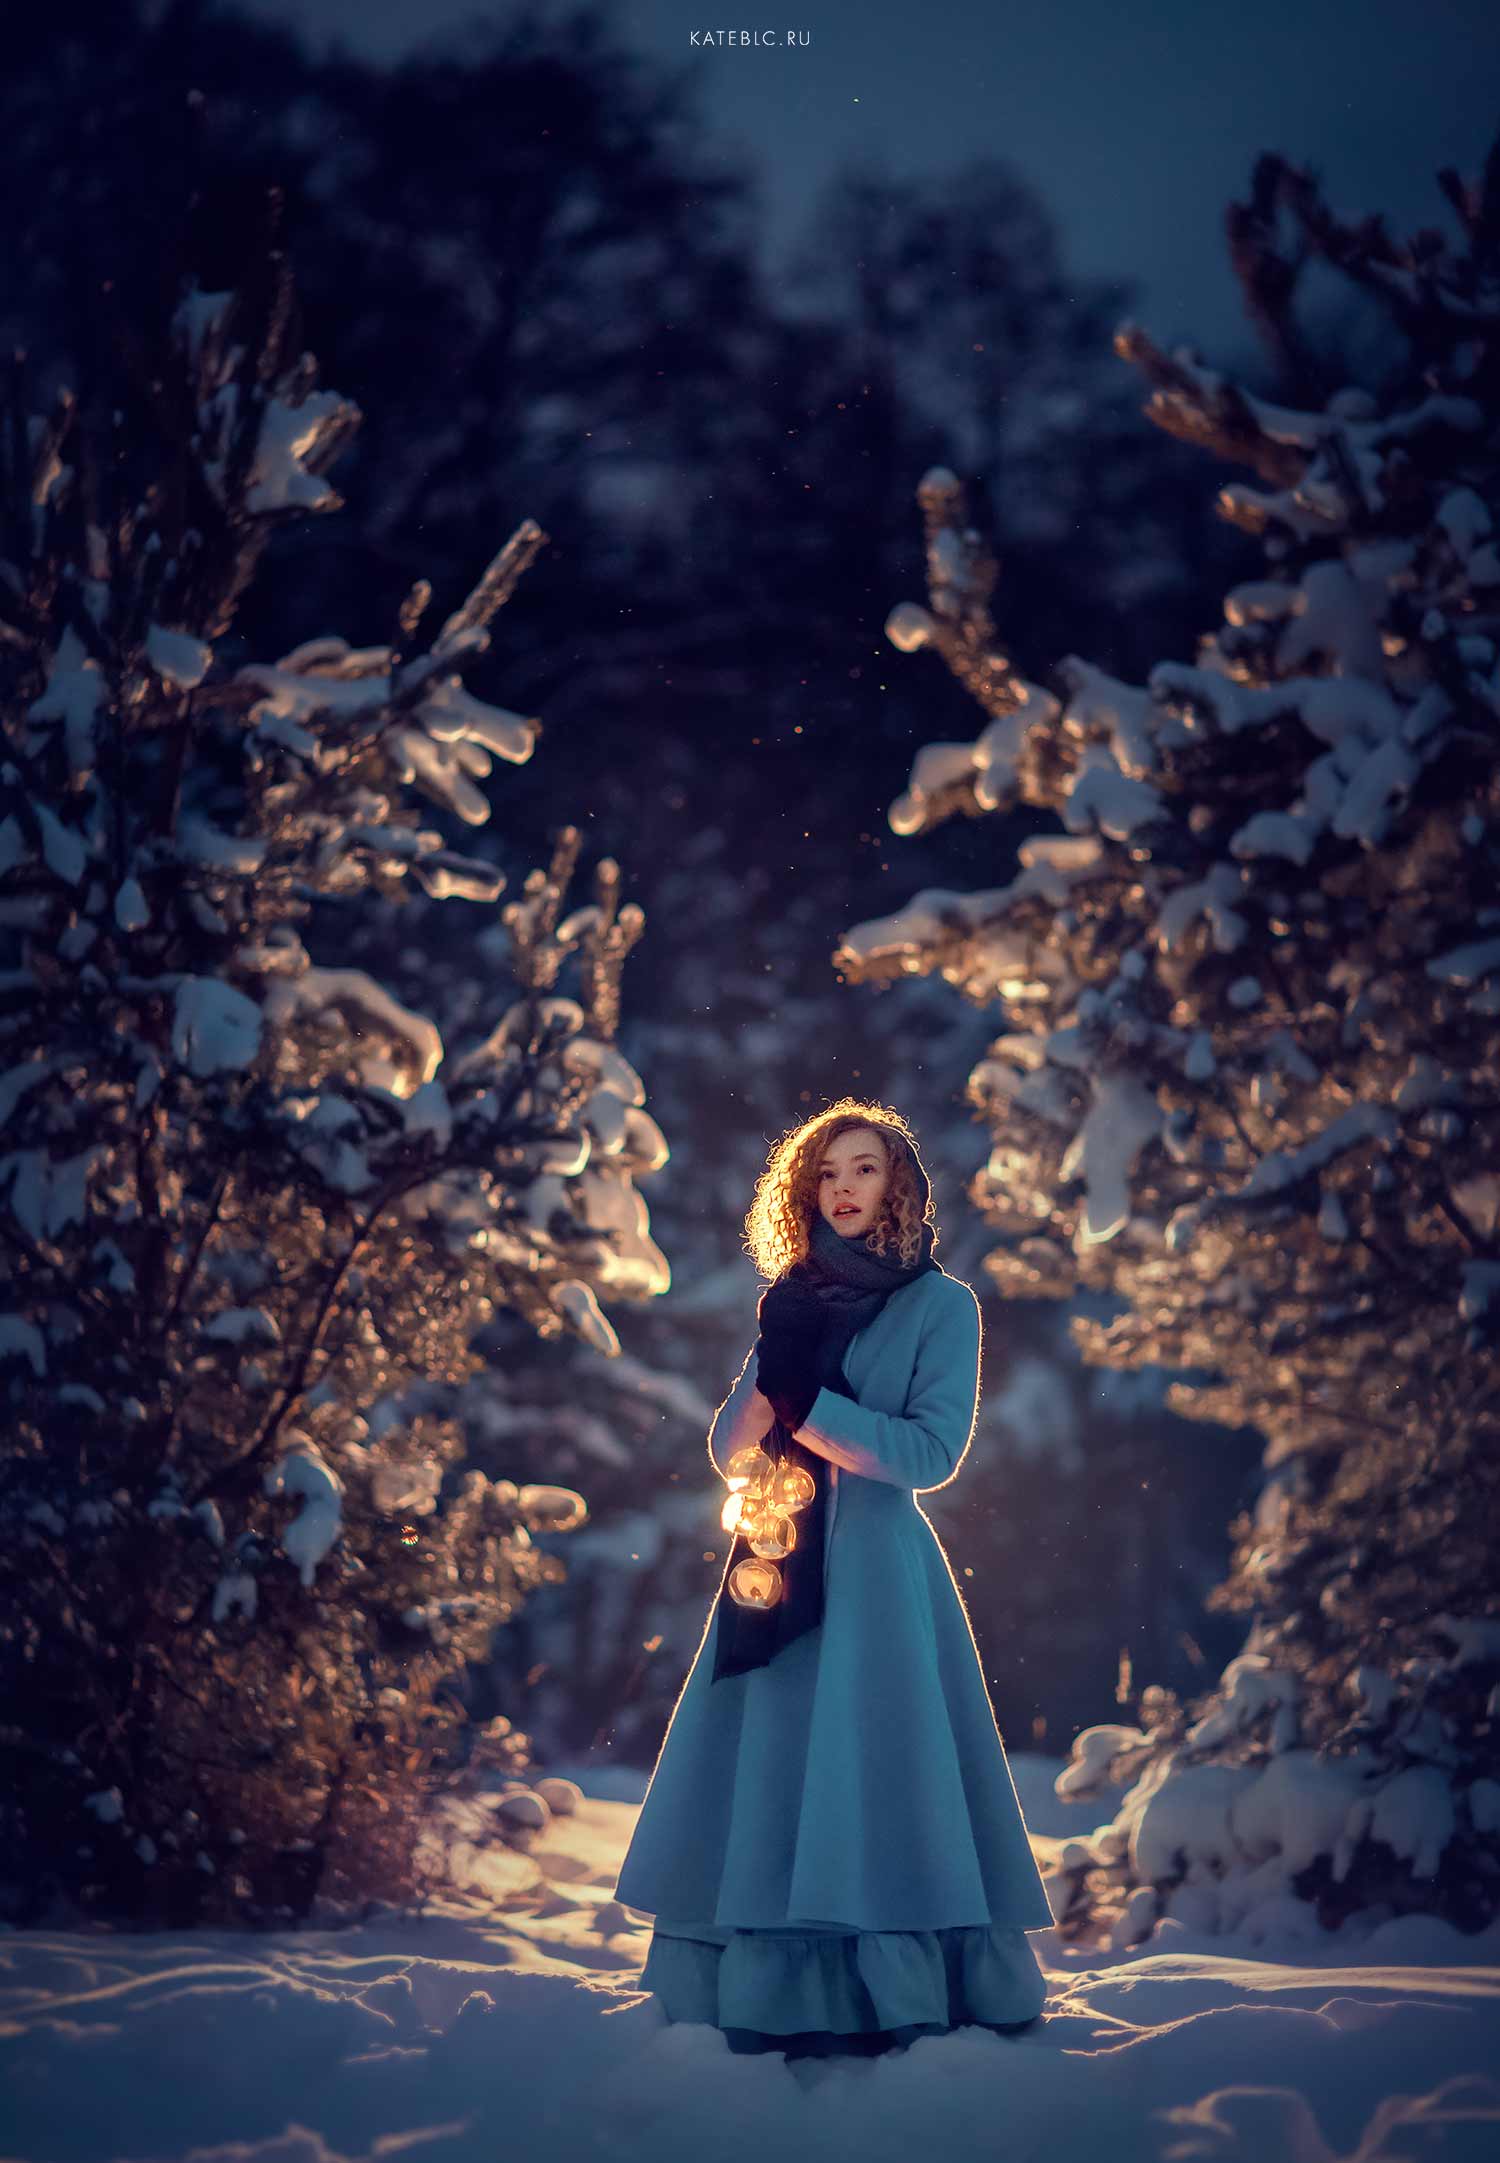 вечерняя фотография, фотосессия на природе, девушка, зима, Катрин Белоцерковская